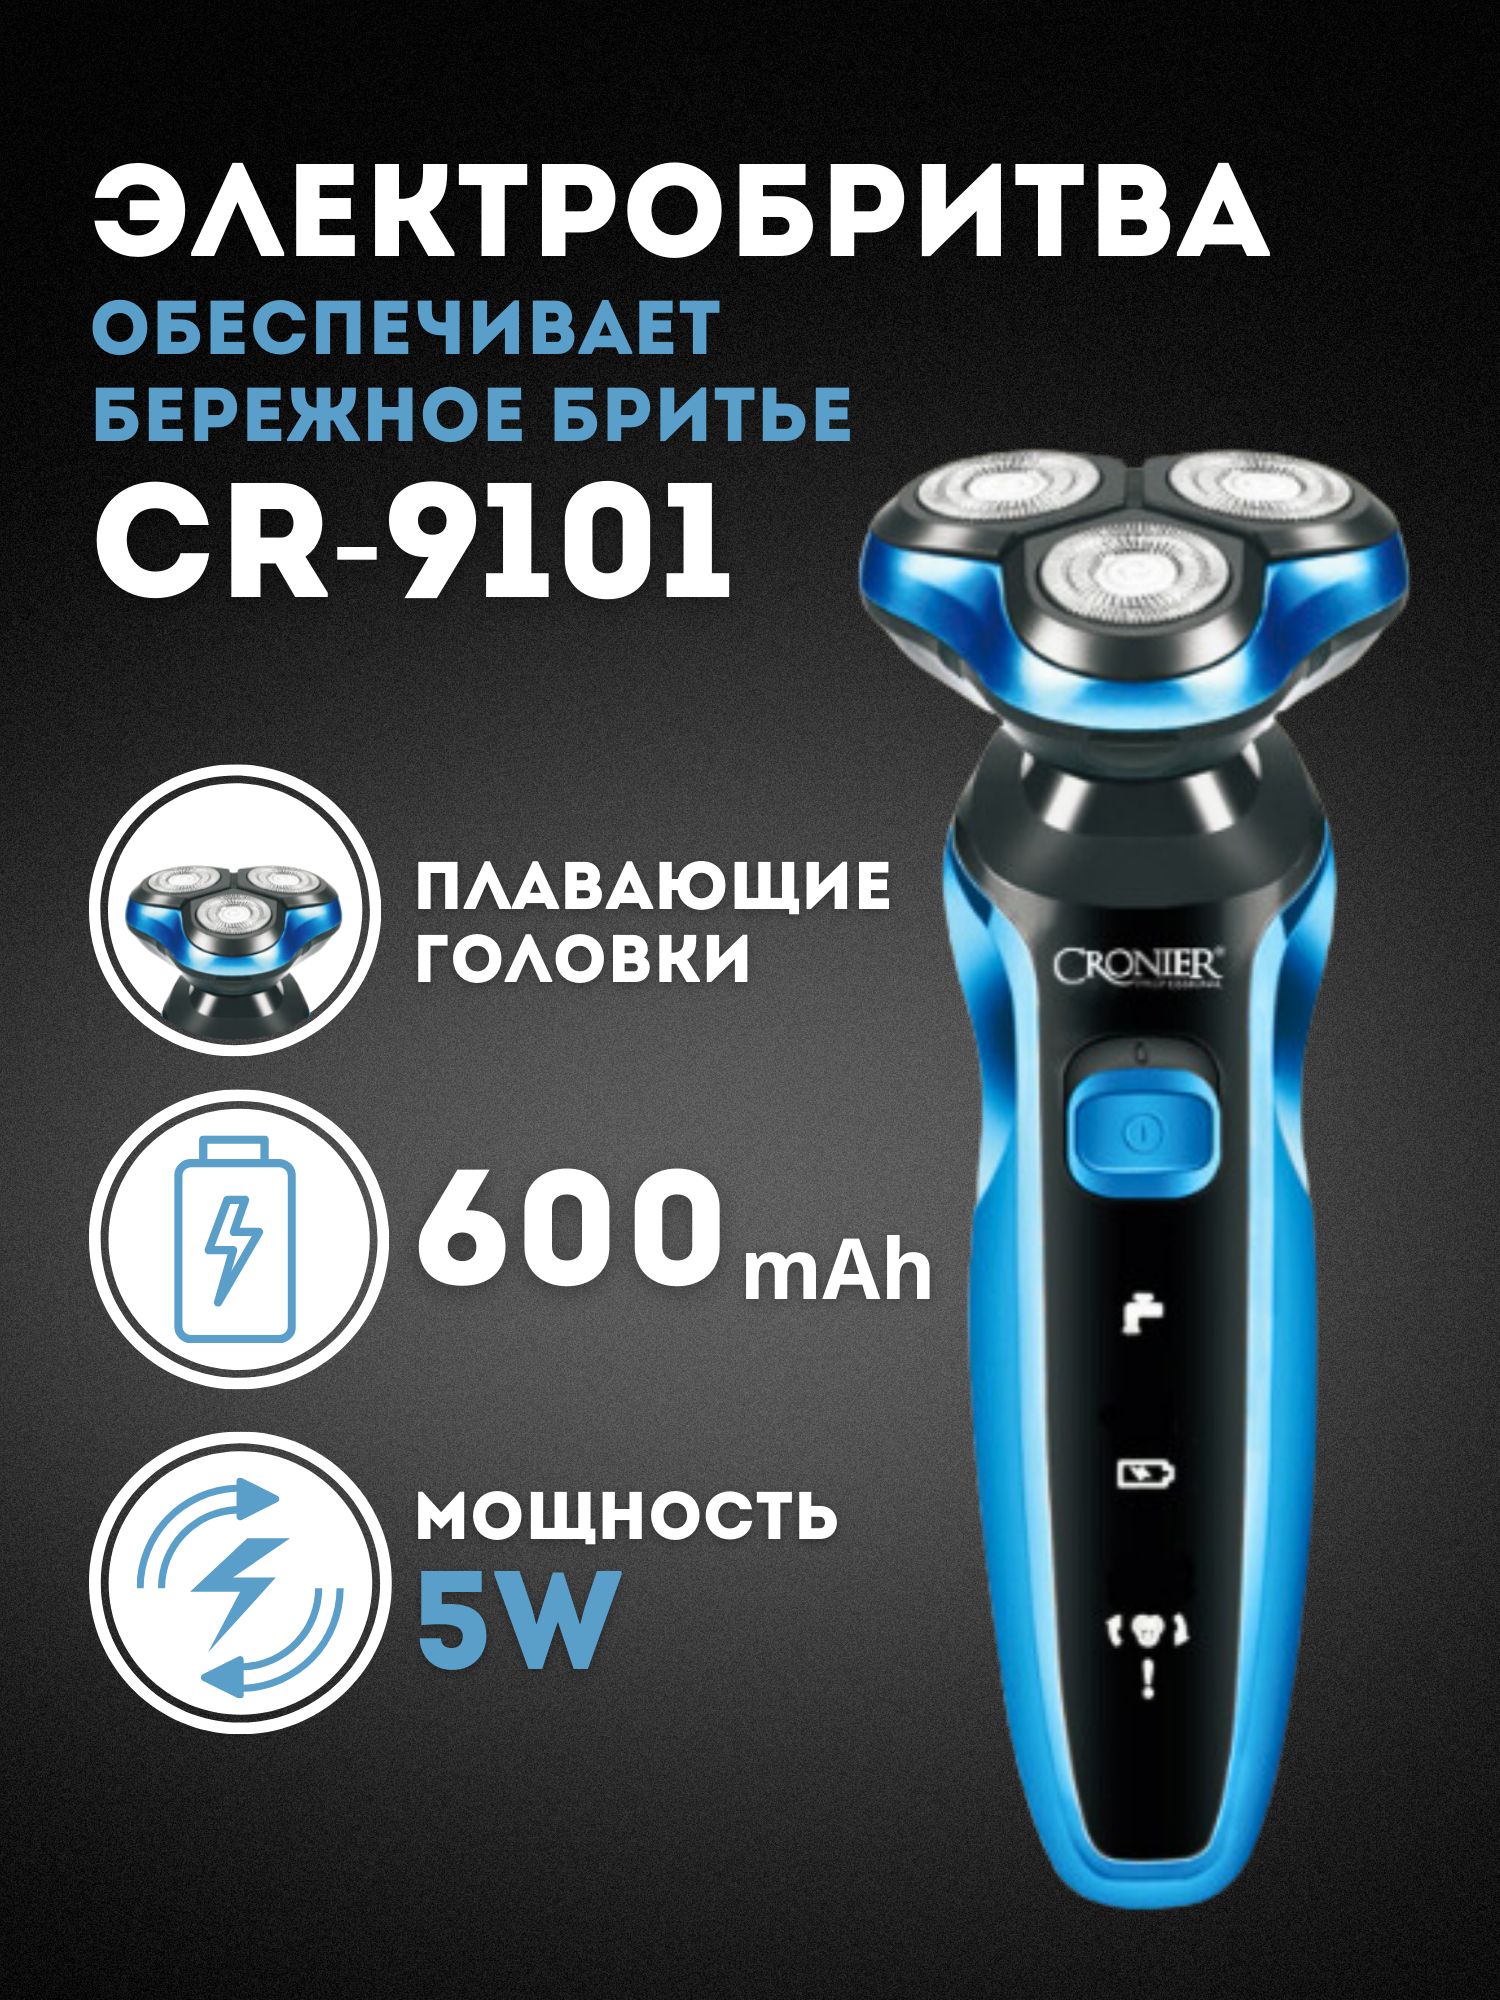 Электробритва Cronier CR-9101 голубая мужская 3 слойная бритва высокое качество лезвие бритвы мужская укладка волос для держателя бритвы